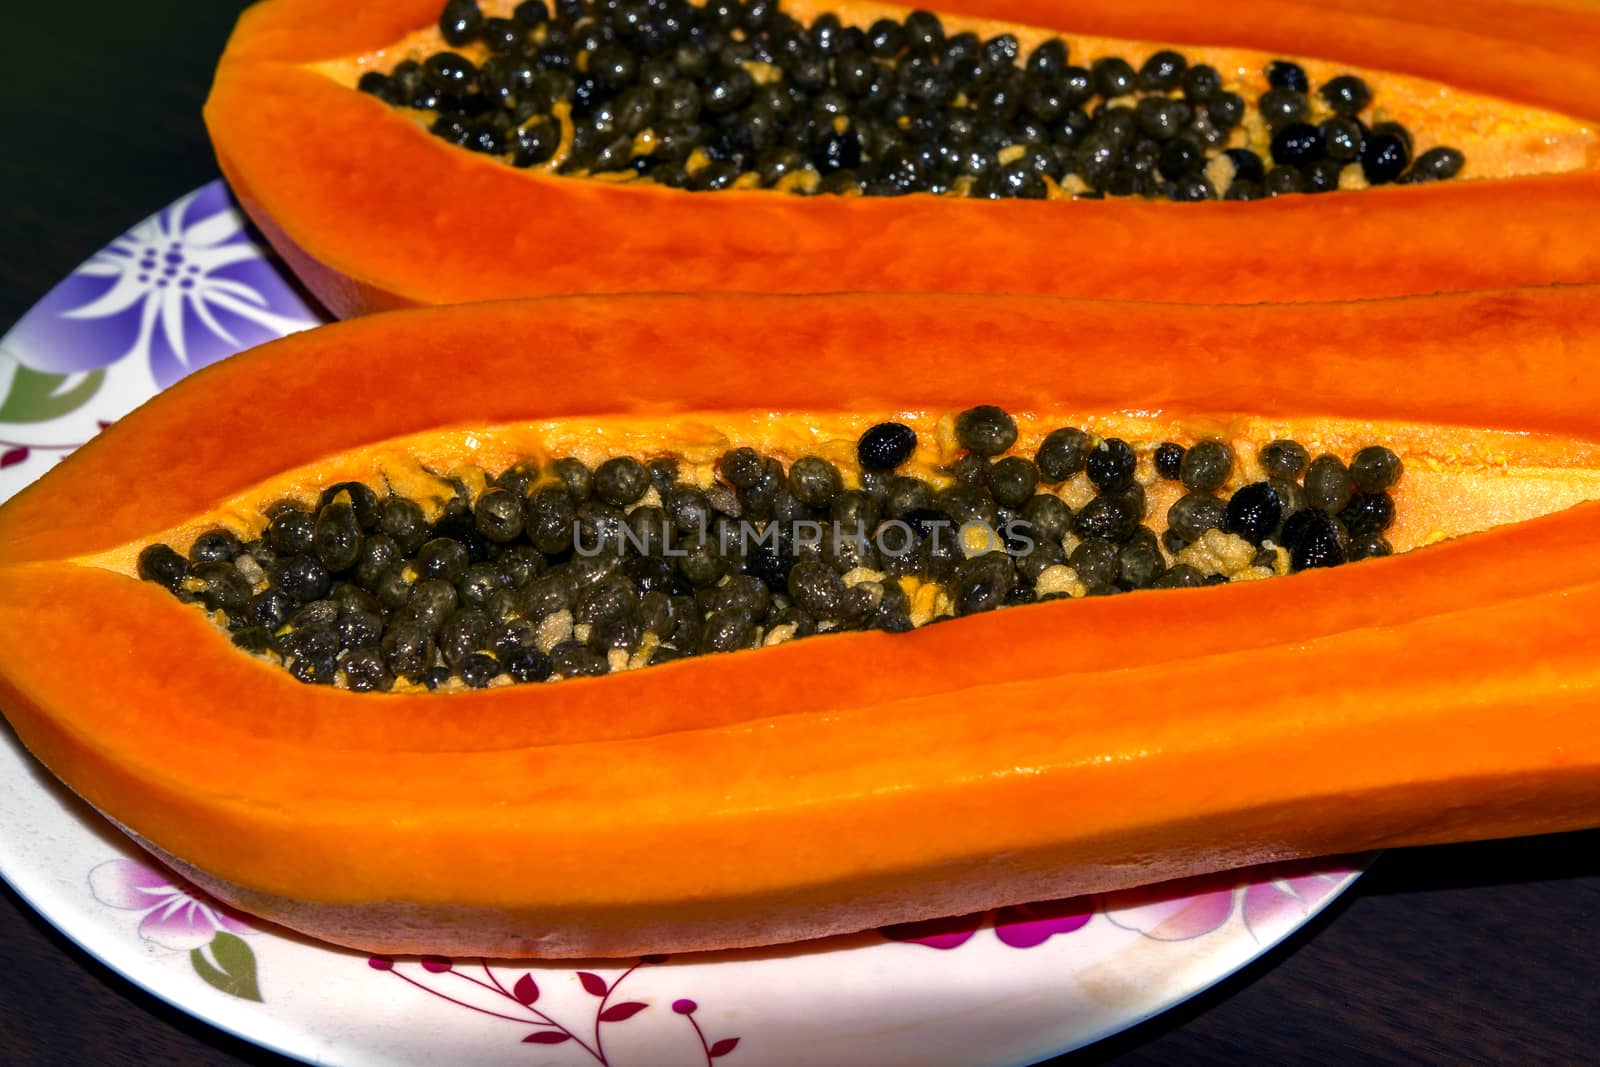 Ripe Papaya Seeds. by GNNick